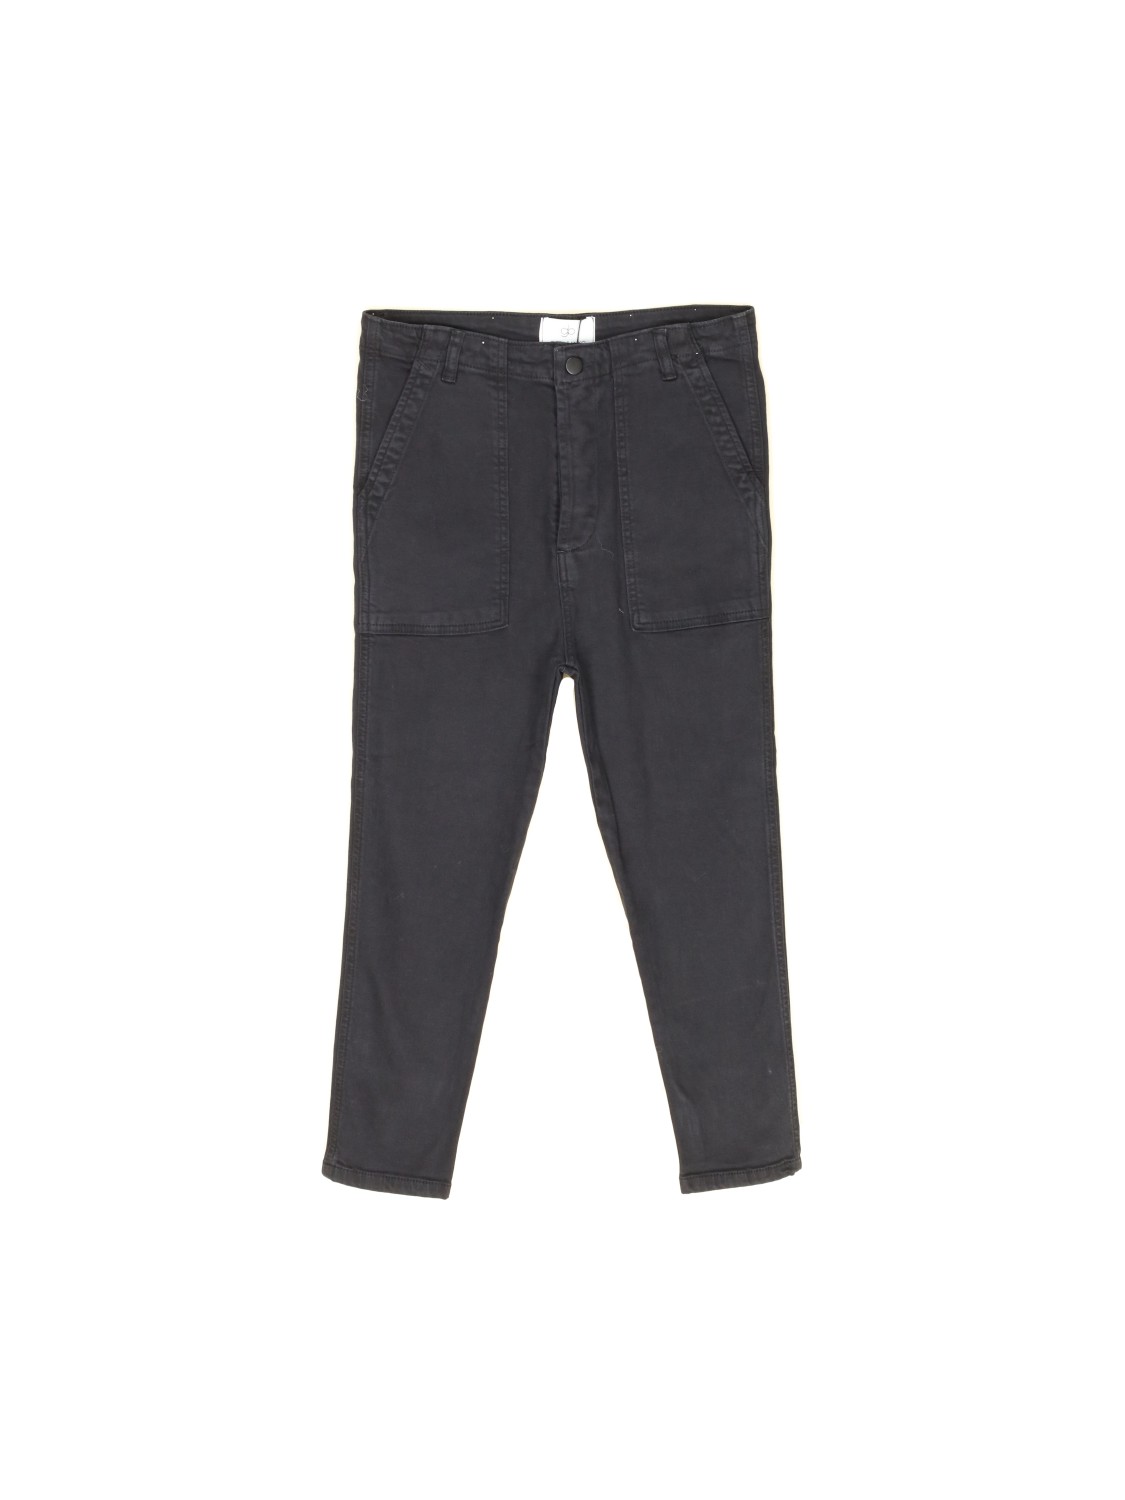 Pantalones Harlow -pantalones tres cuartos de algodón elástico  